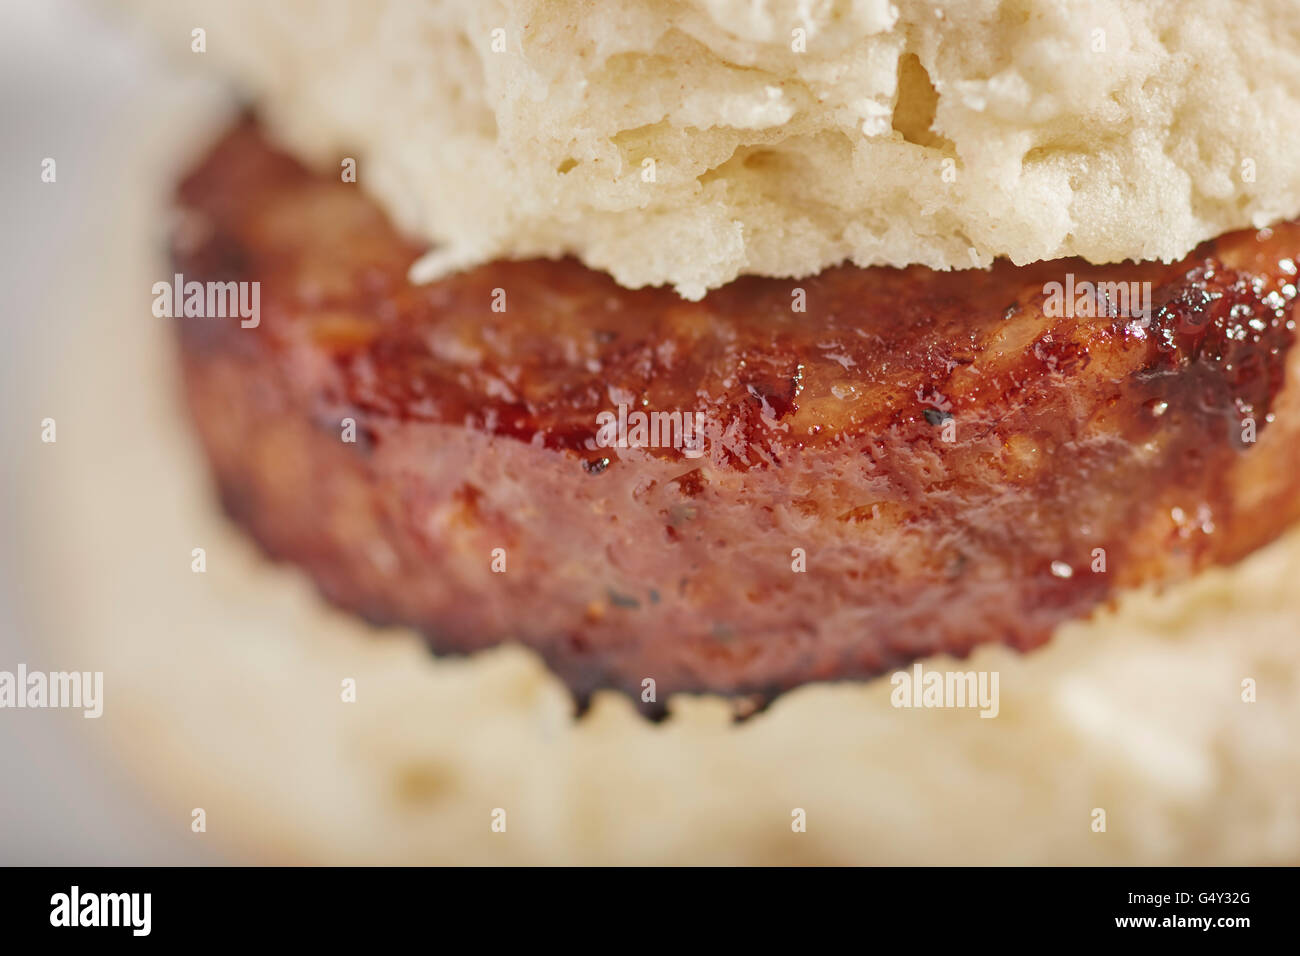 Wurst-Keks, ein klassisches Sandwich des ländlichen Amerika. Stockfoto